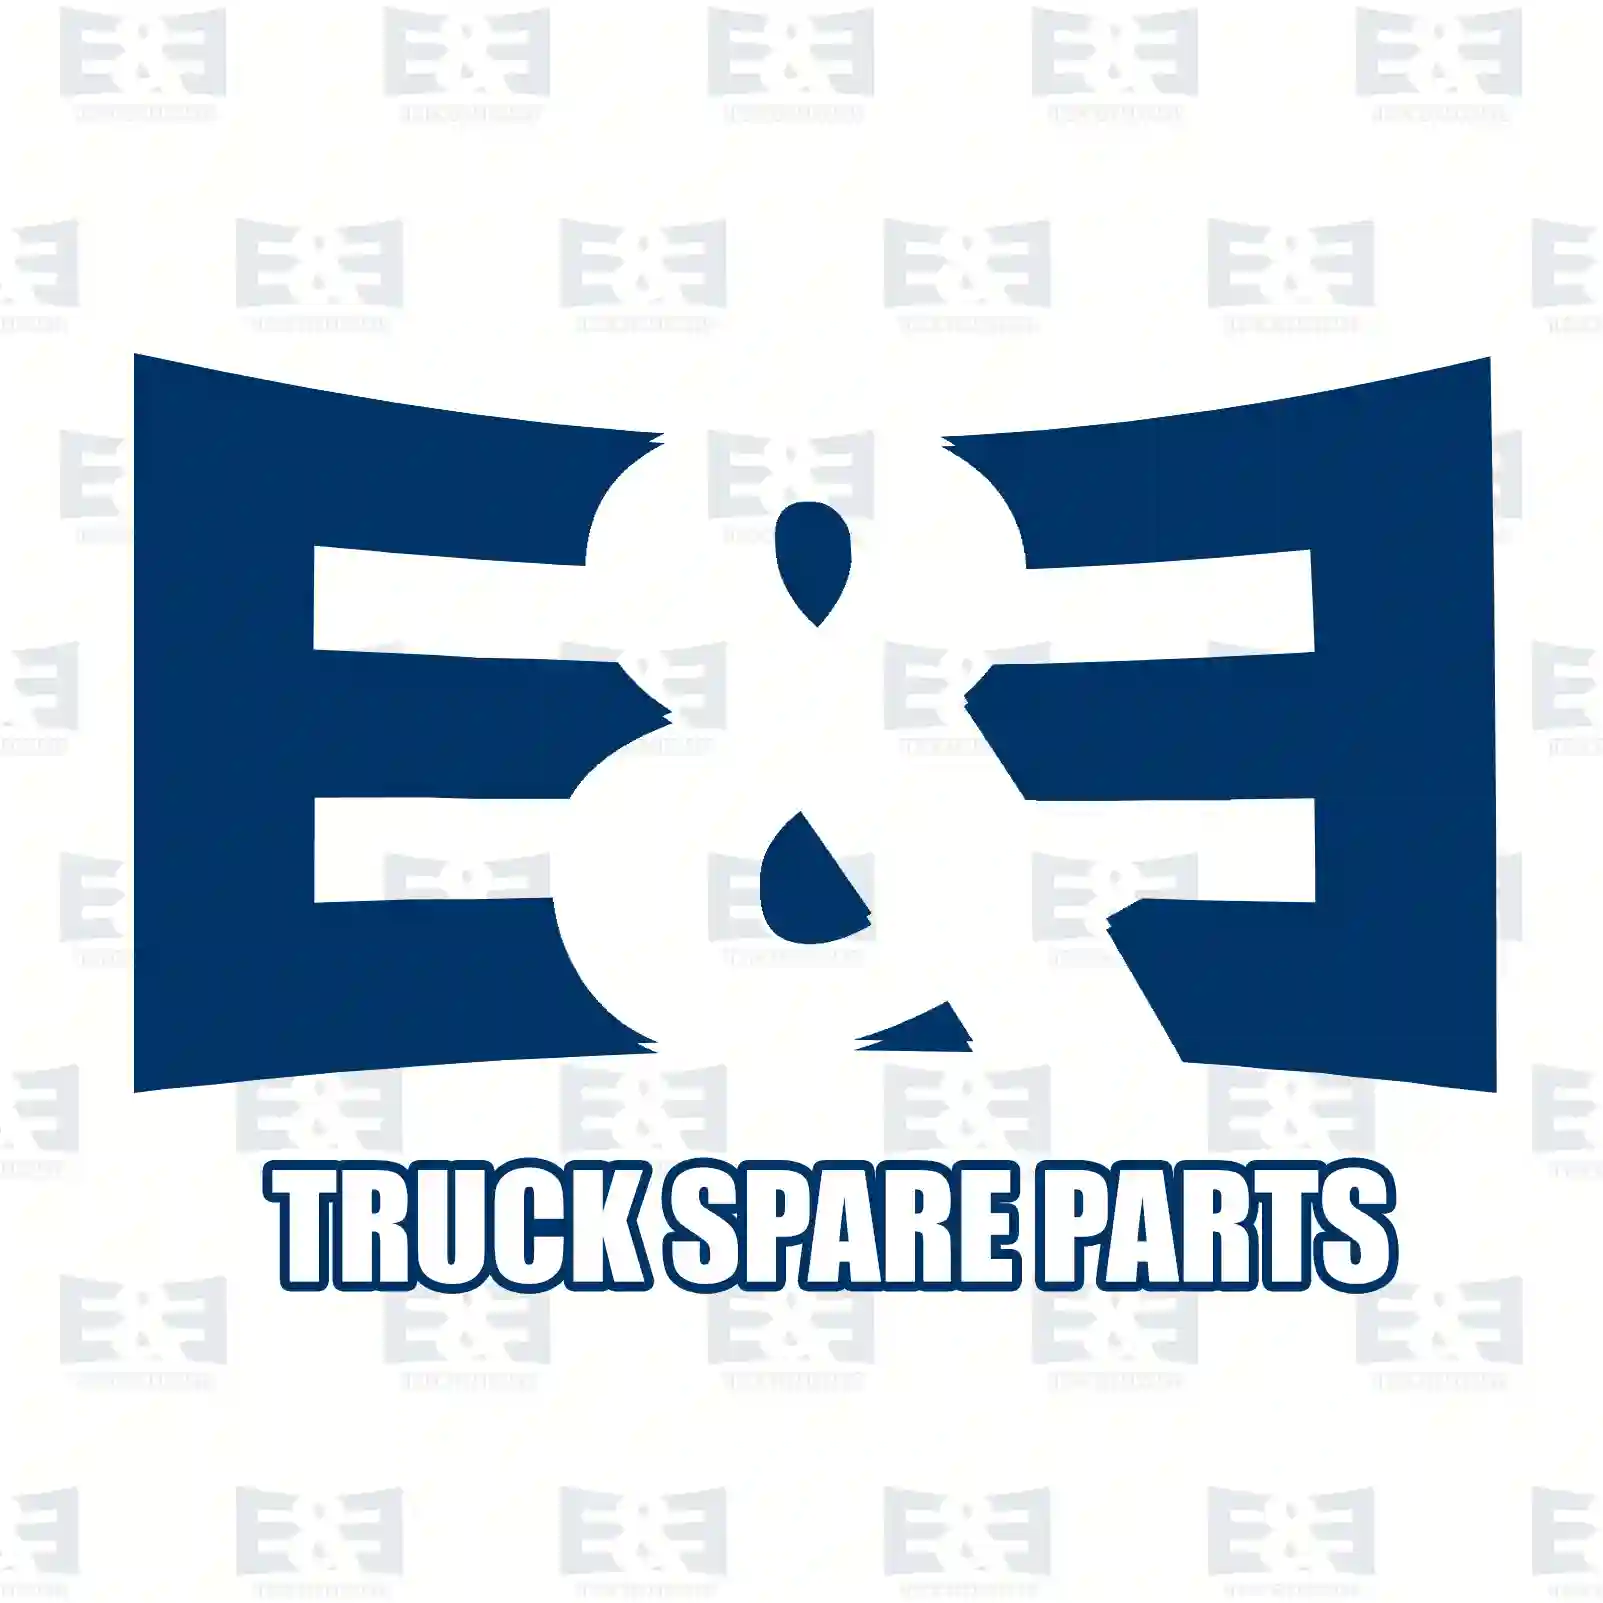 Temperature sensor, 2E2203954, 04837950, 133893, 1338F7, 4837950, 504127558, 04837950, 500334723, 504127558, 04837950, 4837950, 504127558, 04837950, 133893, 1338F7 ||  2E2203954 E&E Truck Spare Parts | Truck Spare Parts, Auotomotive Spare Parts Temperature sensor, 2E2203954, 04837950, 133893, 1338F7, 4837950, 504127558, 04837950, 500334723, 504127558, 04837950, 4837950, 504127558, 04837950, 133893, 1338F7 ||  2E2203954 E&E Truck Spare Parts | Truck Spare Parts, Auotomotive Spare Parts